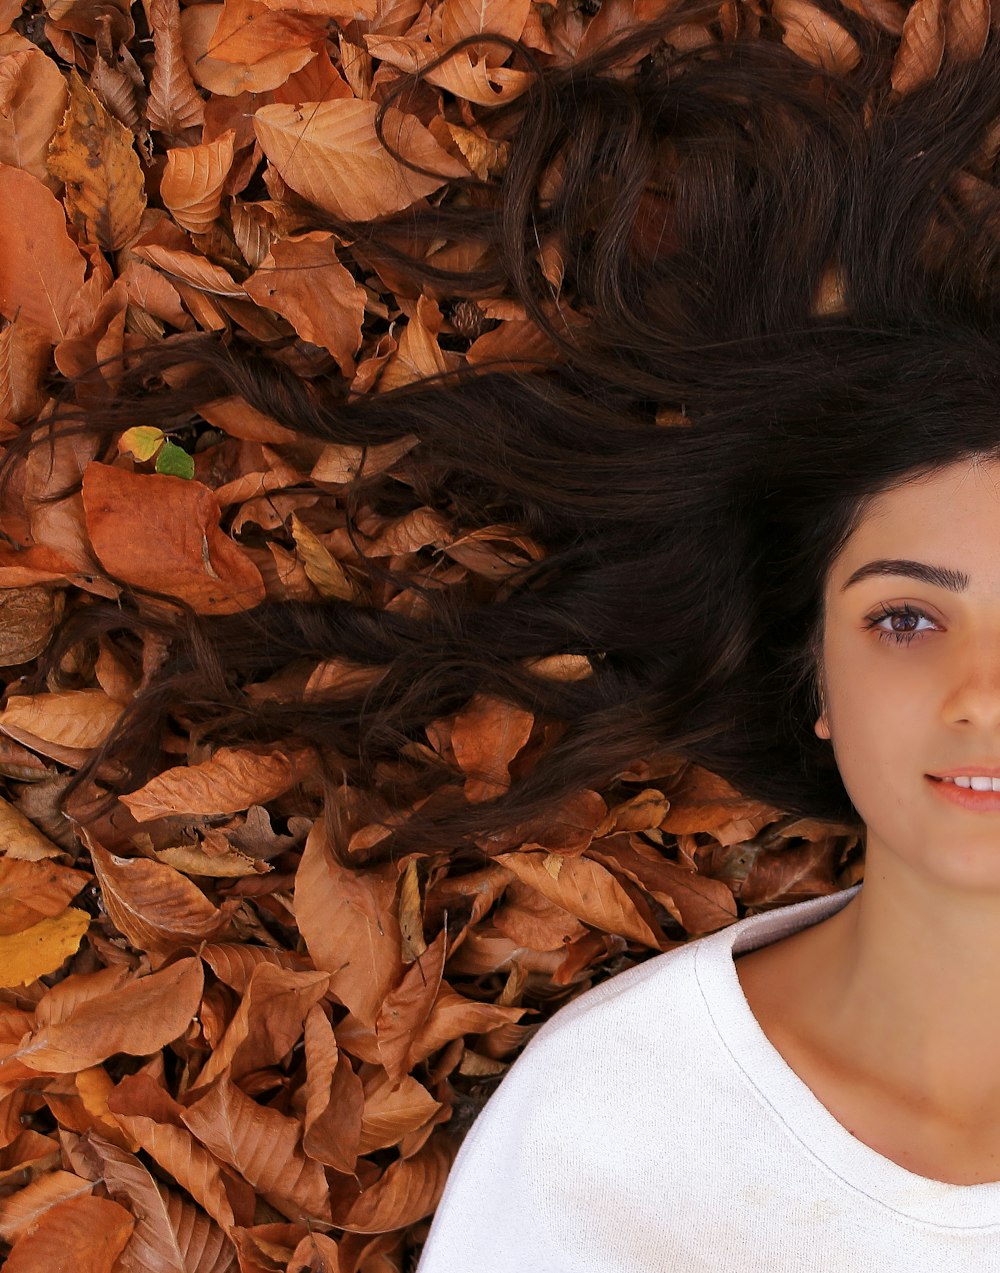 갈색 나뭇잎이 있는 땅에 누워 있는 여자